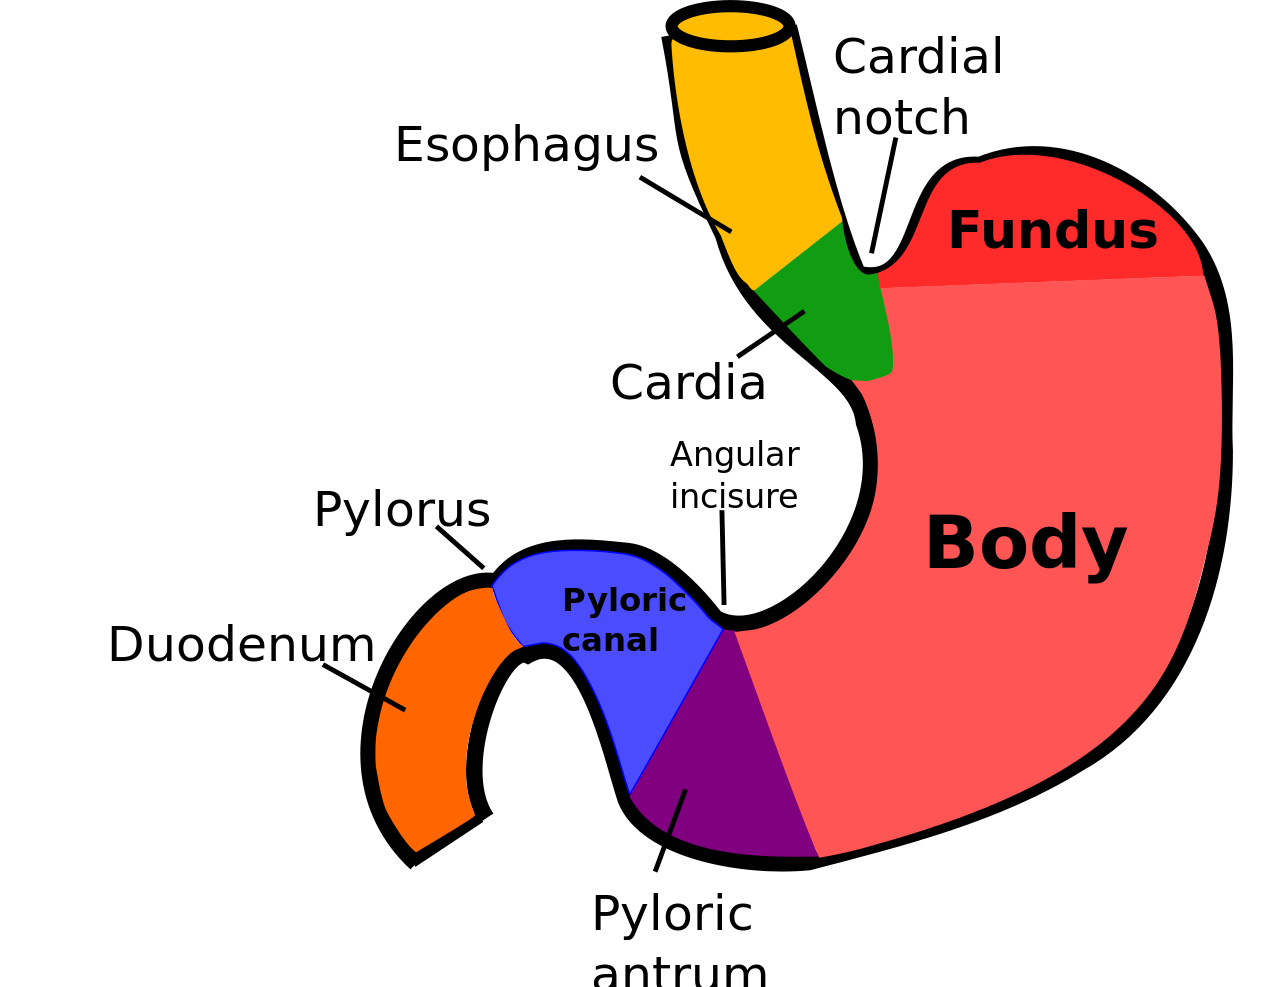 Частями желудка являются. Строение желудка кардиальная вырезка. Желудок кардиальный отдел желудка. Пилорический отдел желудка схема. Кардиальная часть желудка анатомия.